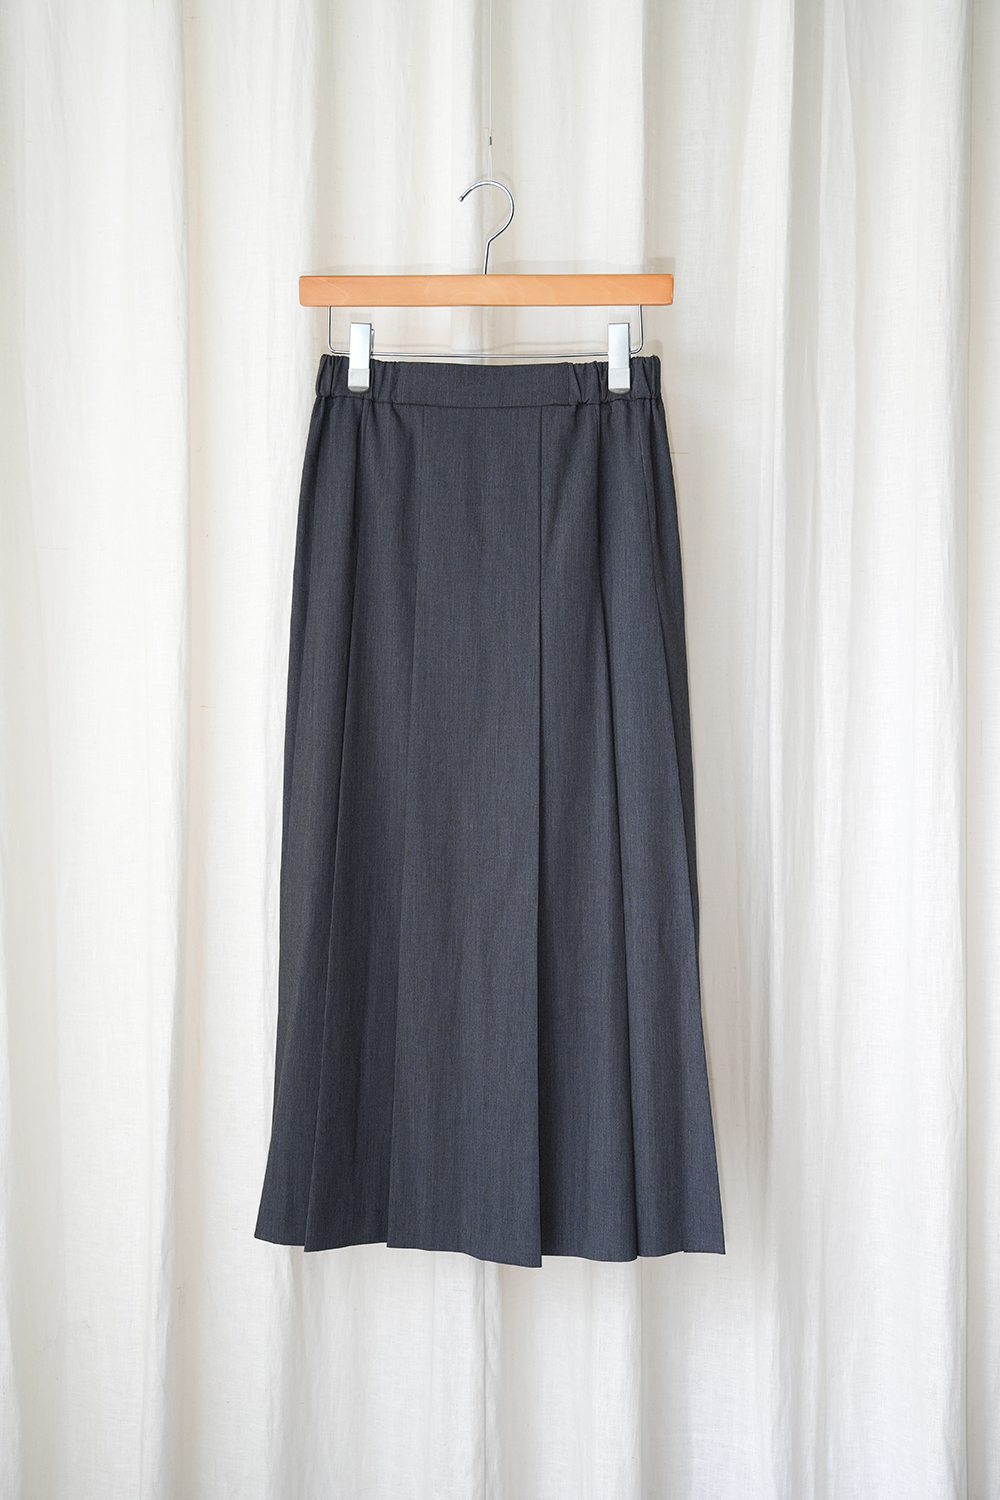 tuck pleats skirt